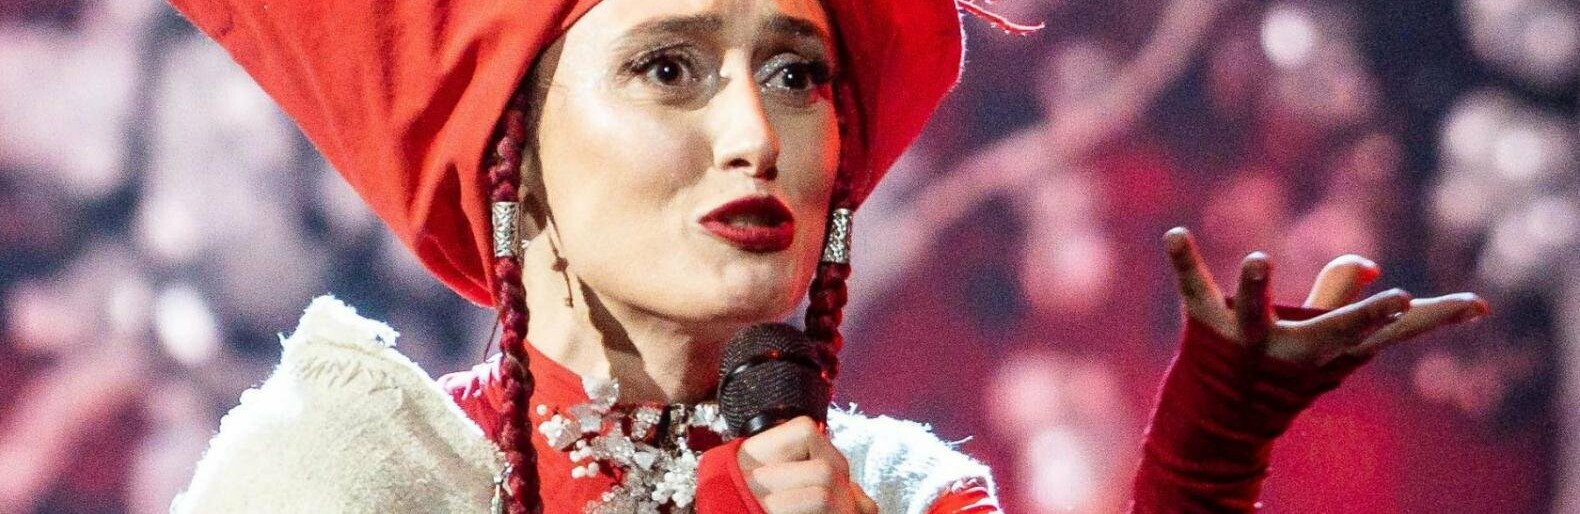 "Україна залишиться без "Євробачення" цього року?": Аліна Паш відмовилася представляти країну на конкурсі